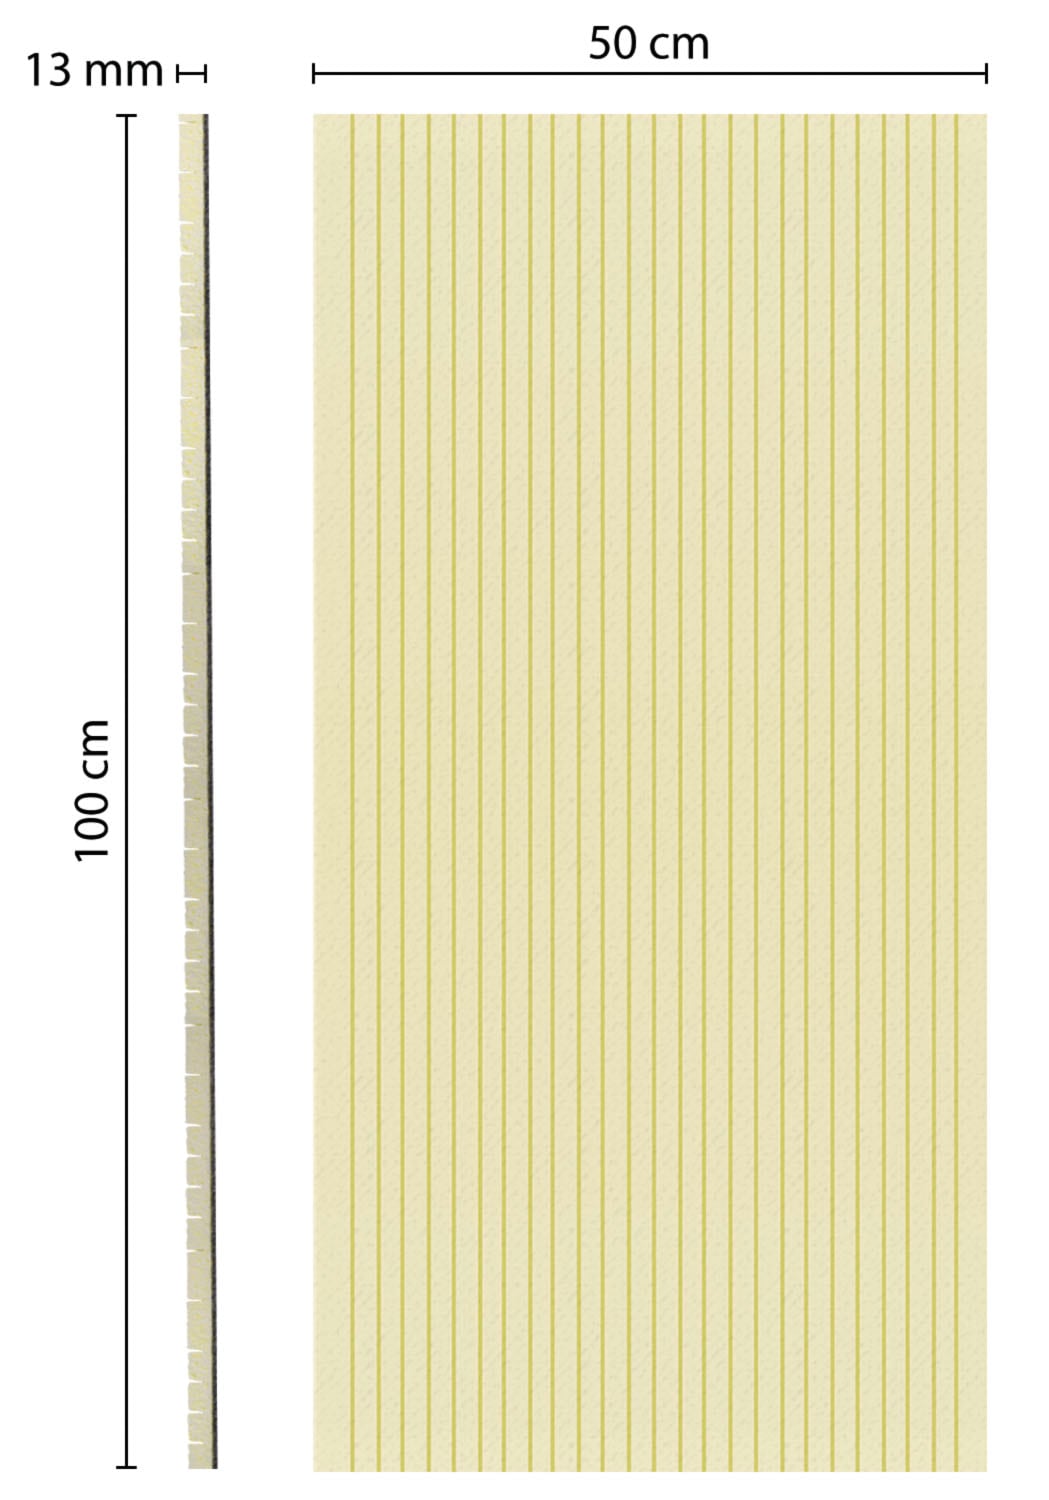 SCHELLENBERG Rollladenkastendämmung, 2-teilig, 100 x 50 x 1,3 cm, zur  Dämmung für enge Rolladenkästen